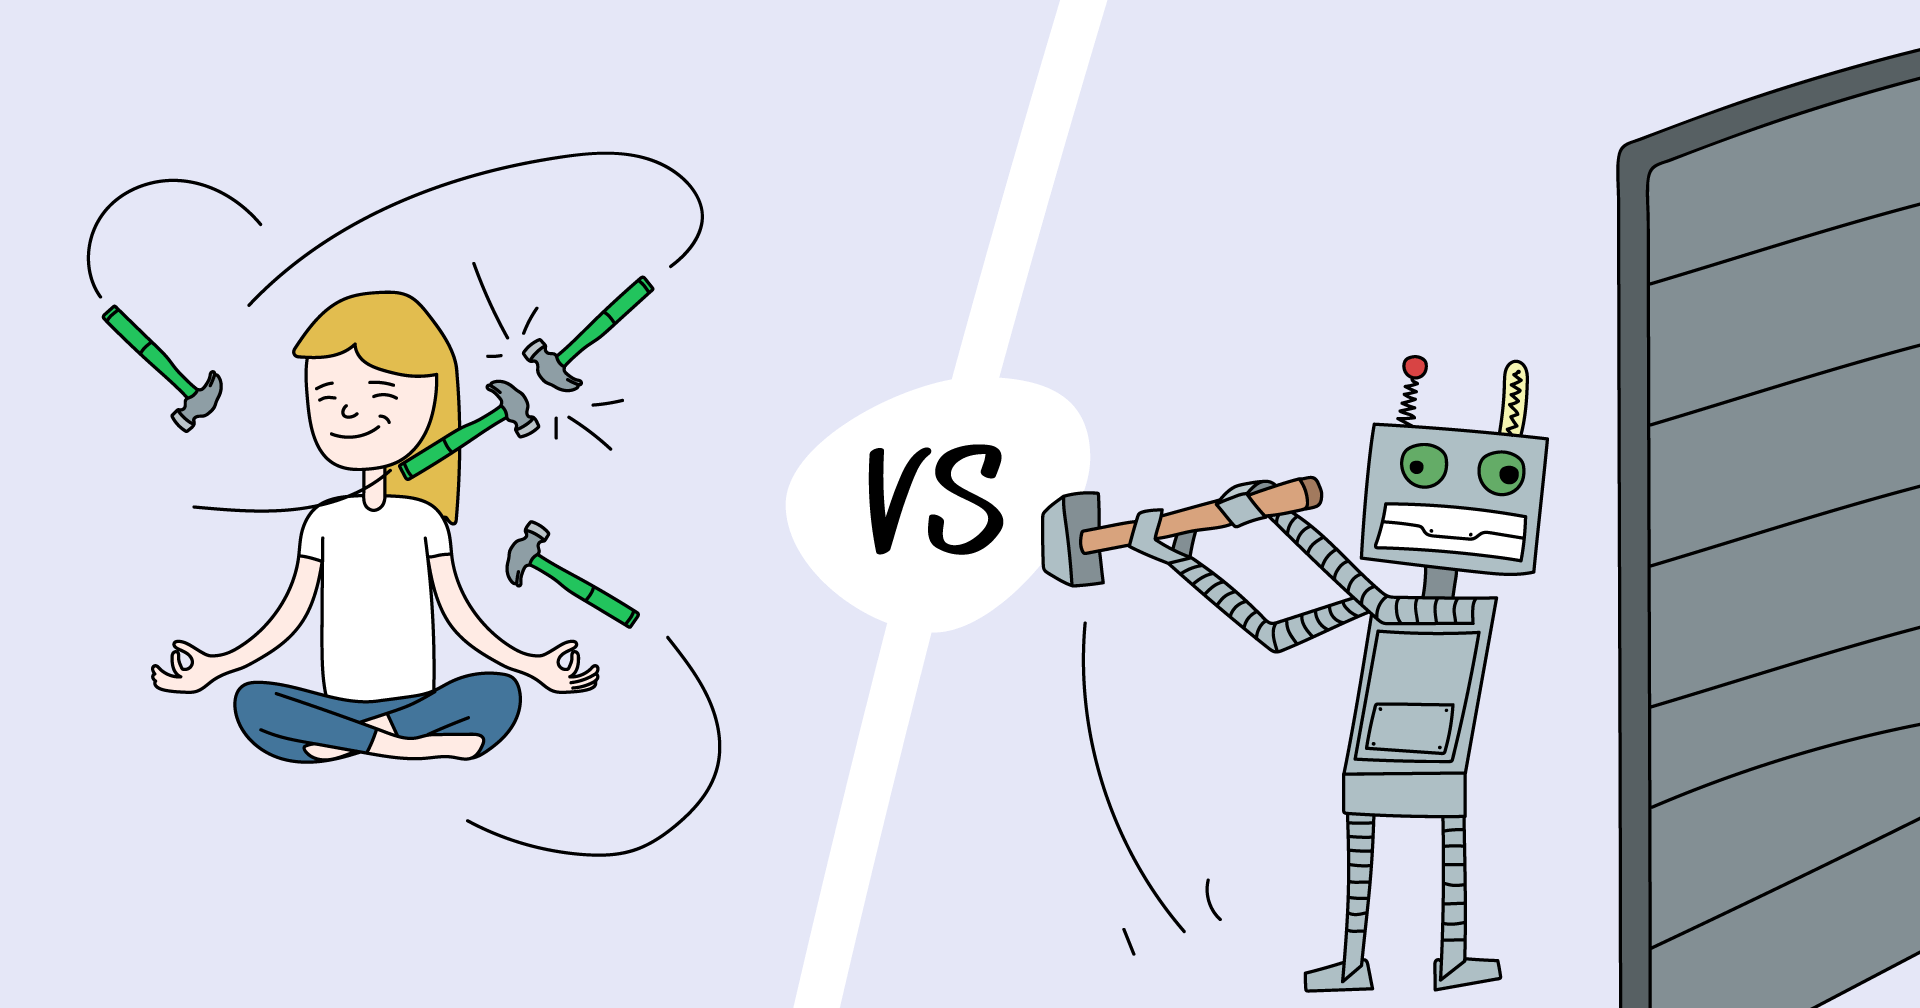 Human tester vs robot